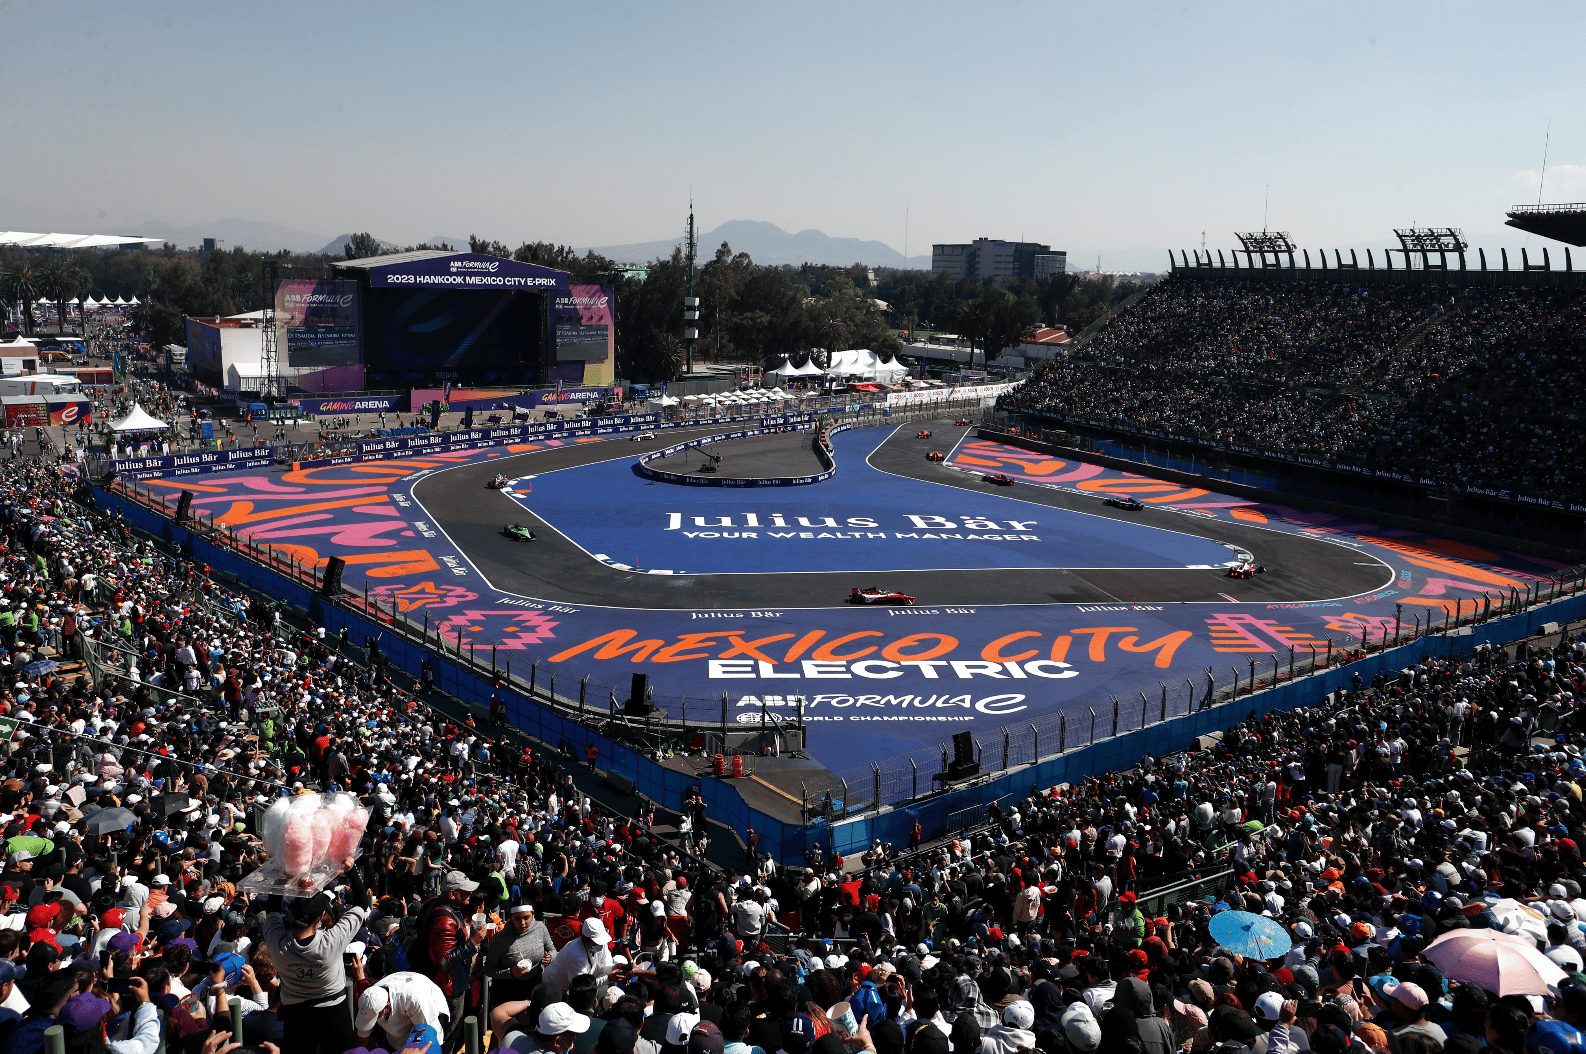 سباق هانكوك مكسيكو سيتي 2023 للفورمولا إي